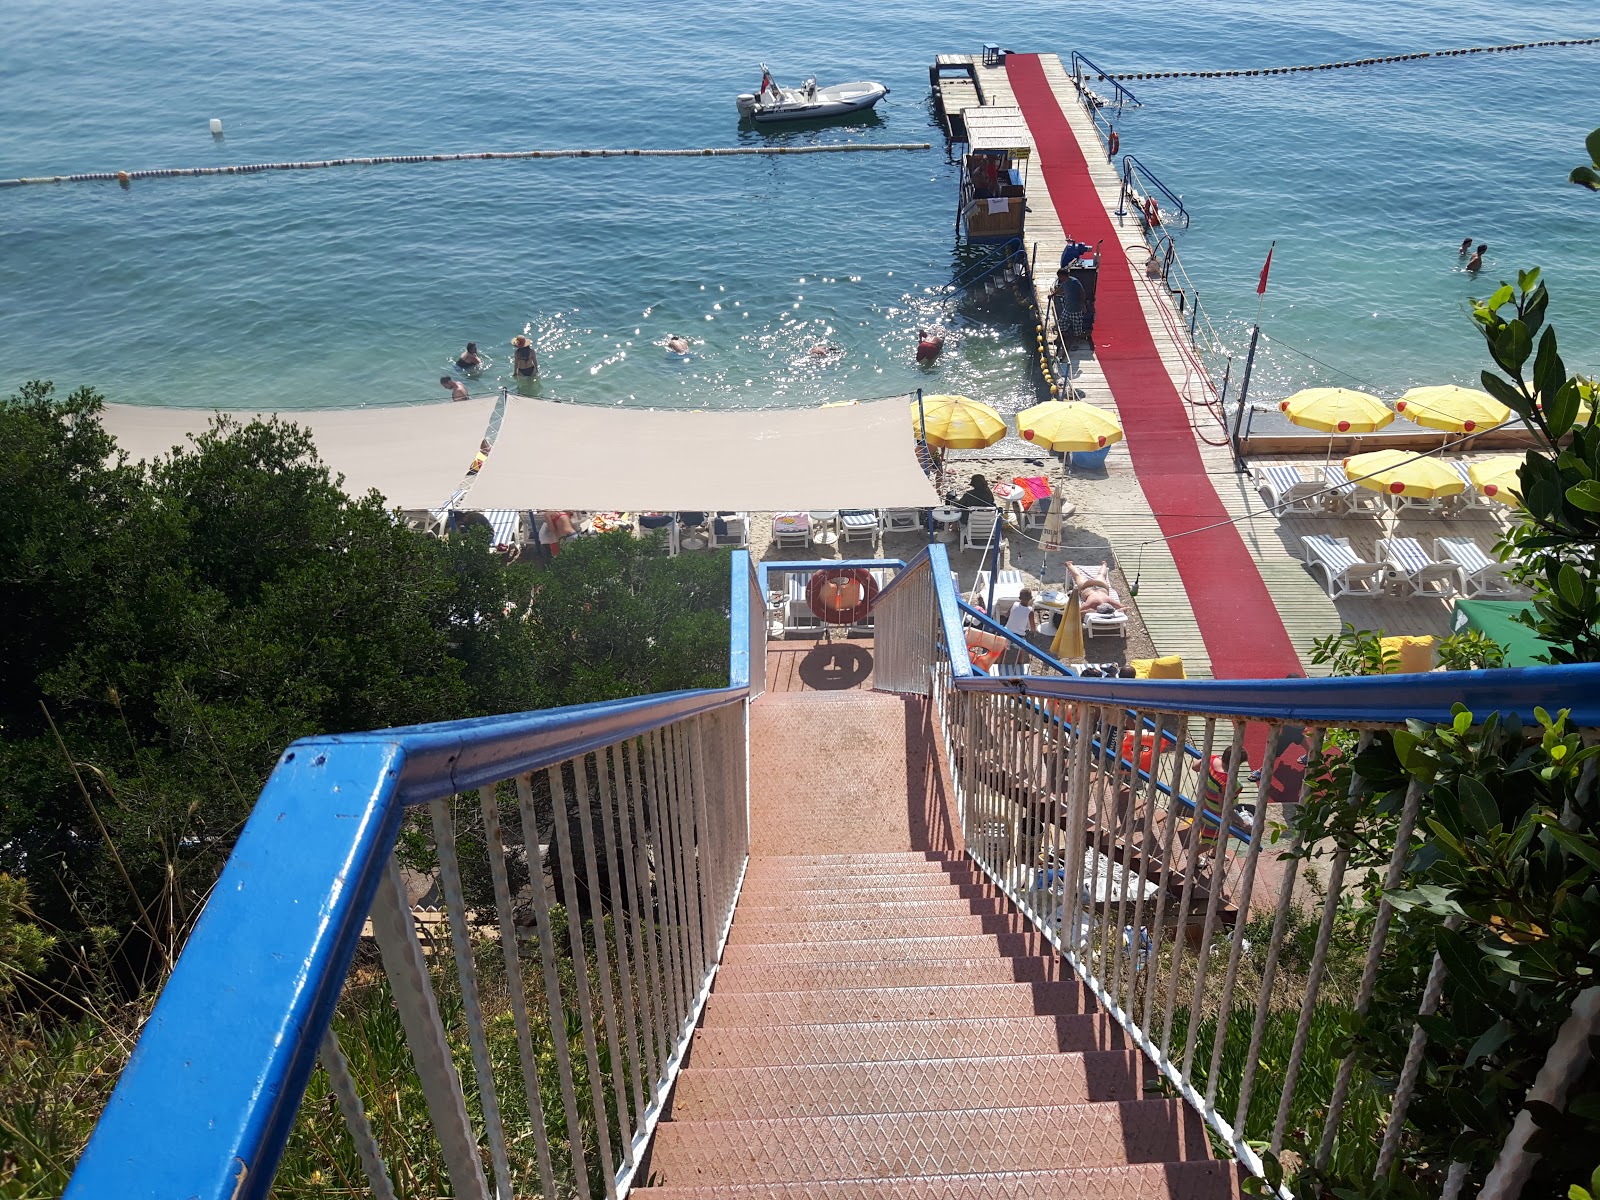 Fotografija Halik Koyu Aile Plaji priljubljeno mesto med poznavalci sprostitve